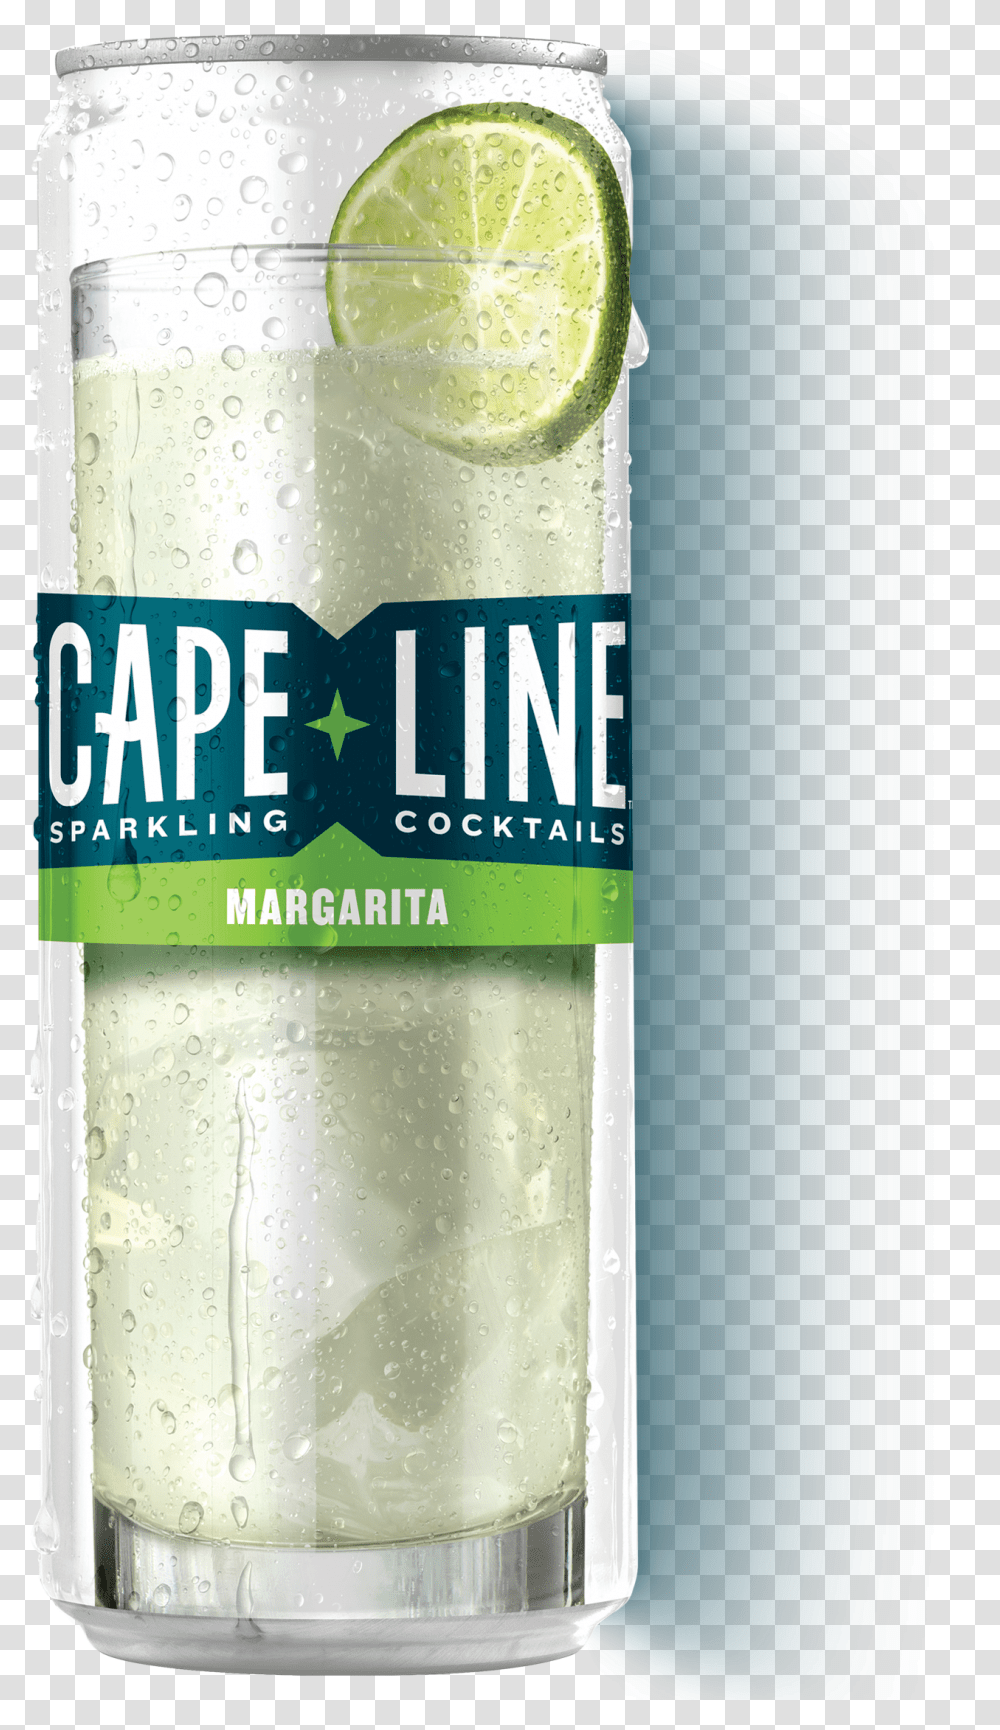 Margarita Capeline Sparkling Cocktails, Liquor, Alcohol, Beverage, Drink Transparent Png